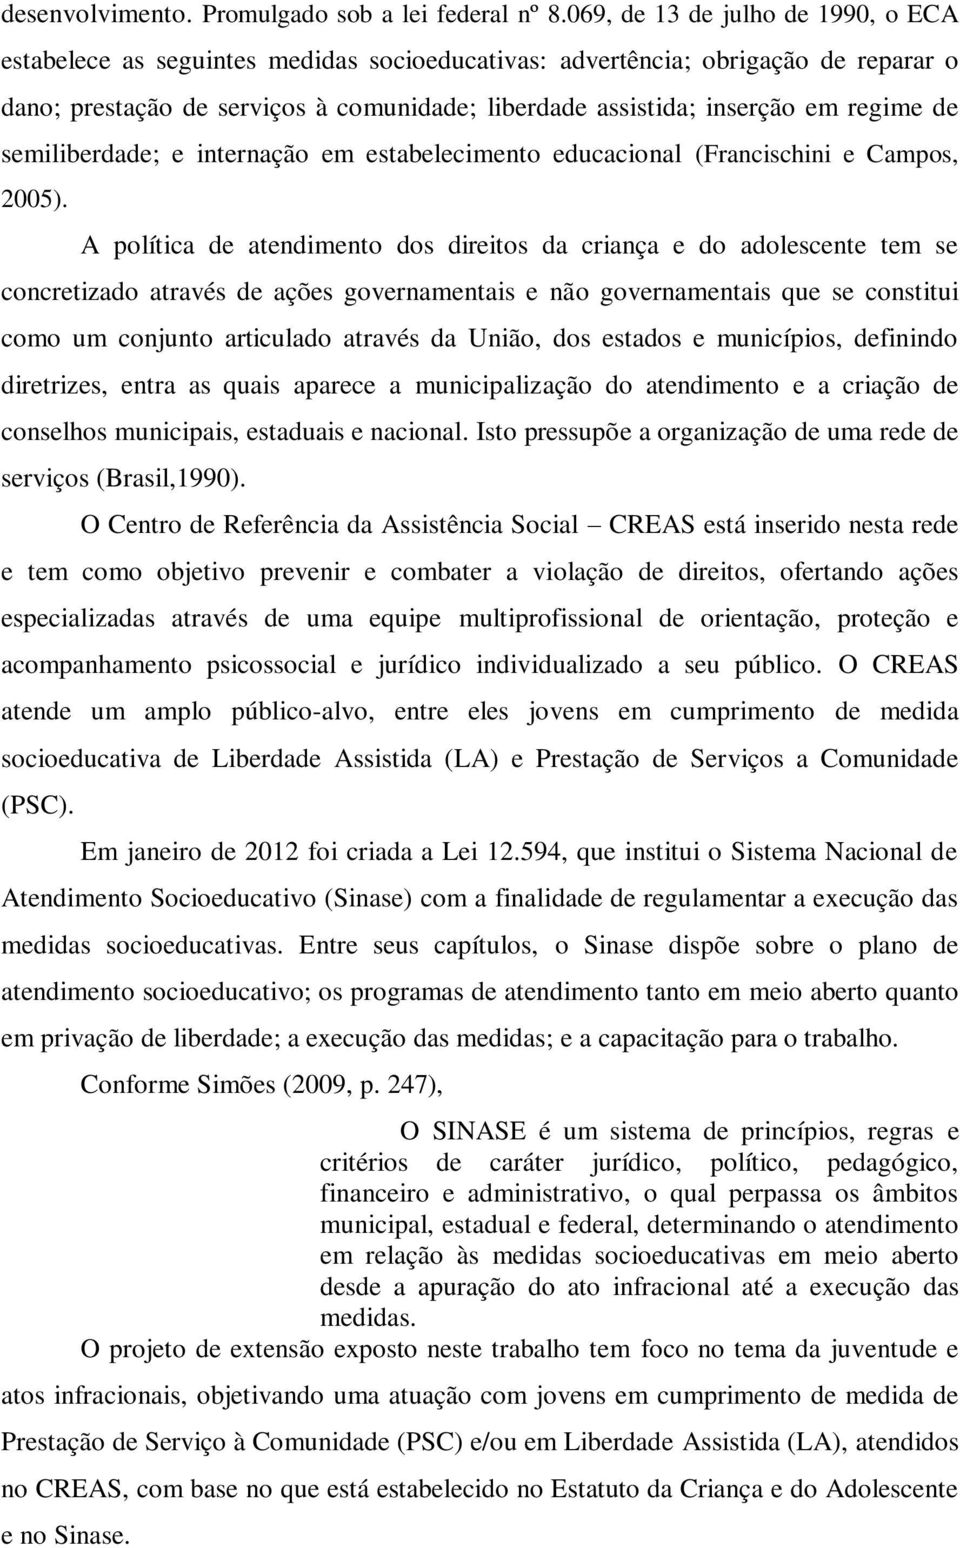 regime de semiliberdade; e internação em estabelecimento educacional (Francischini e Campos, 2005).